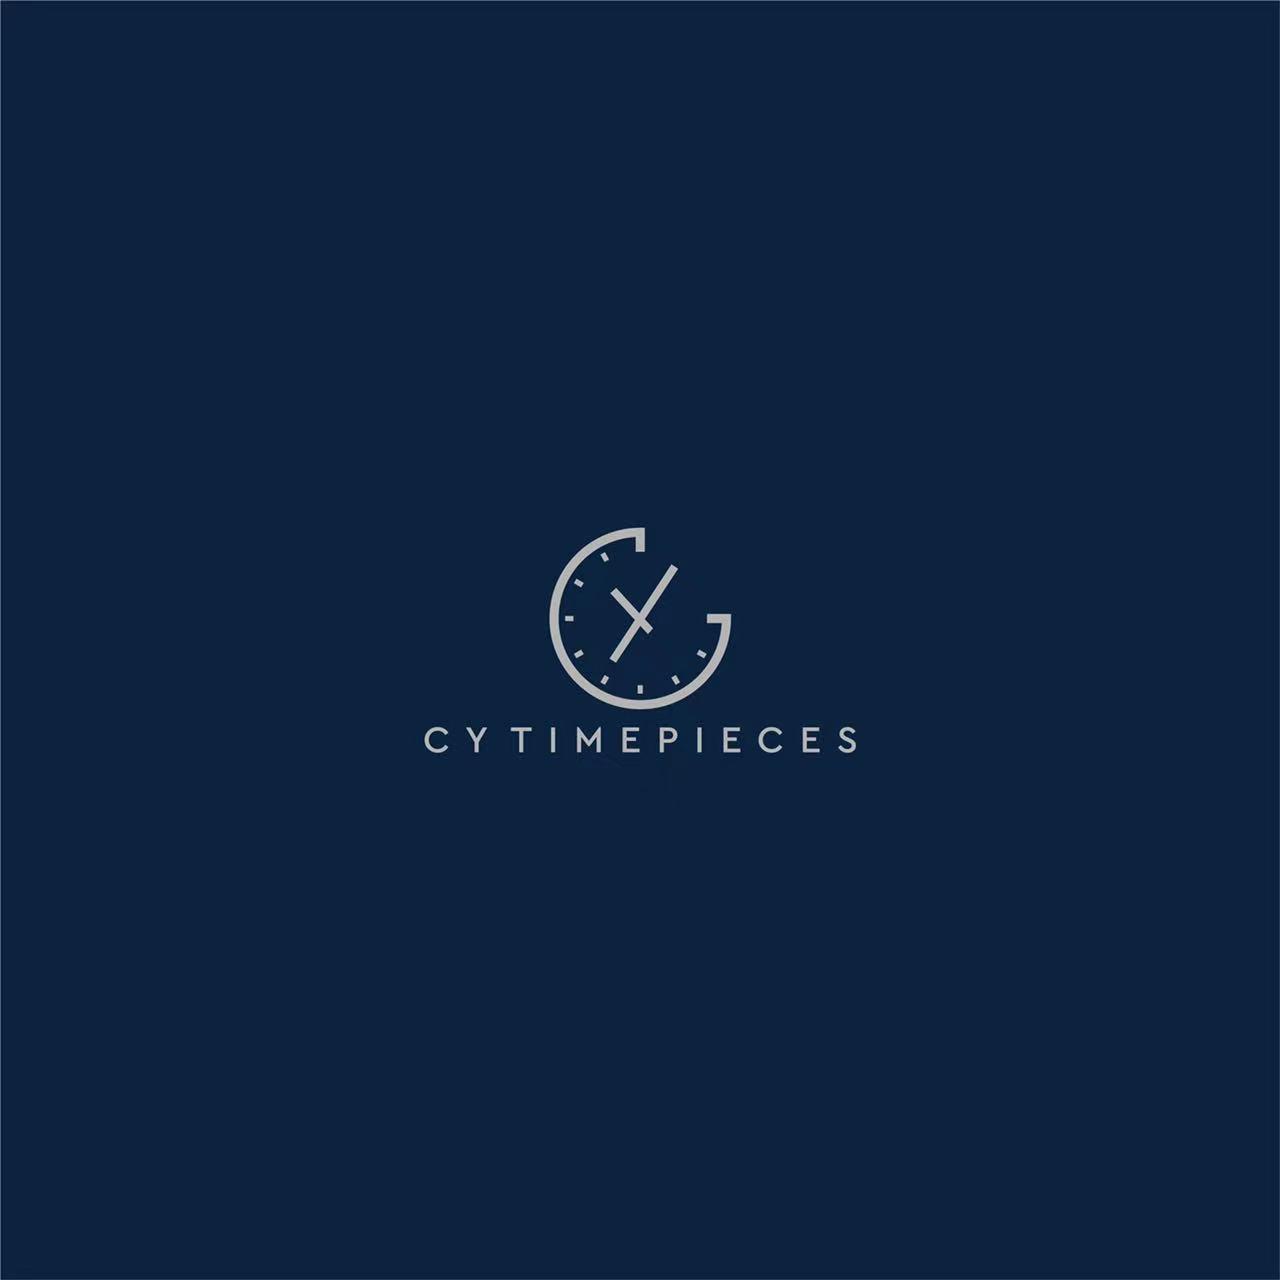 CY Timepieces - MondaniWeb